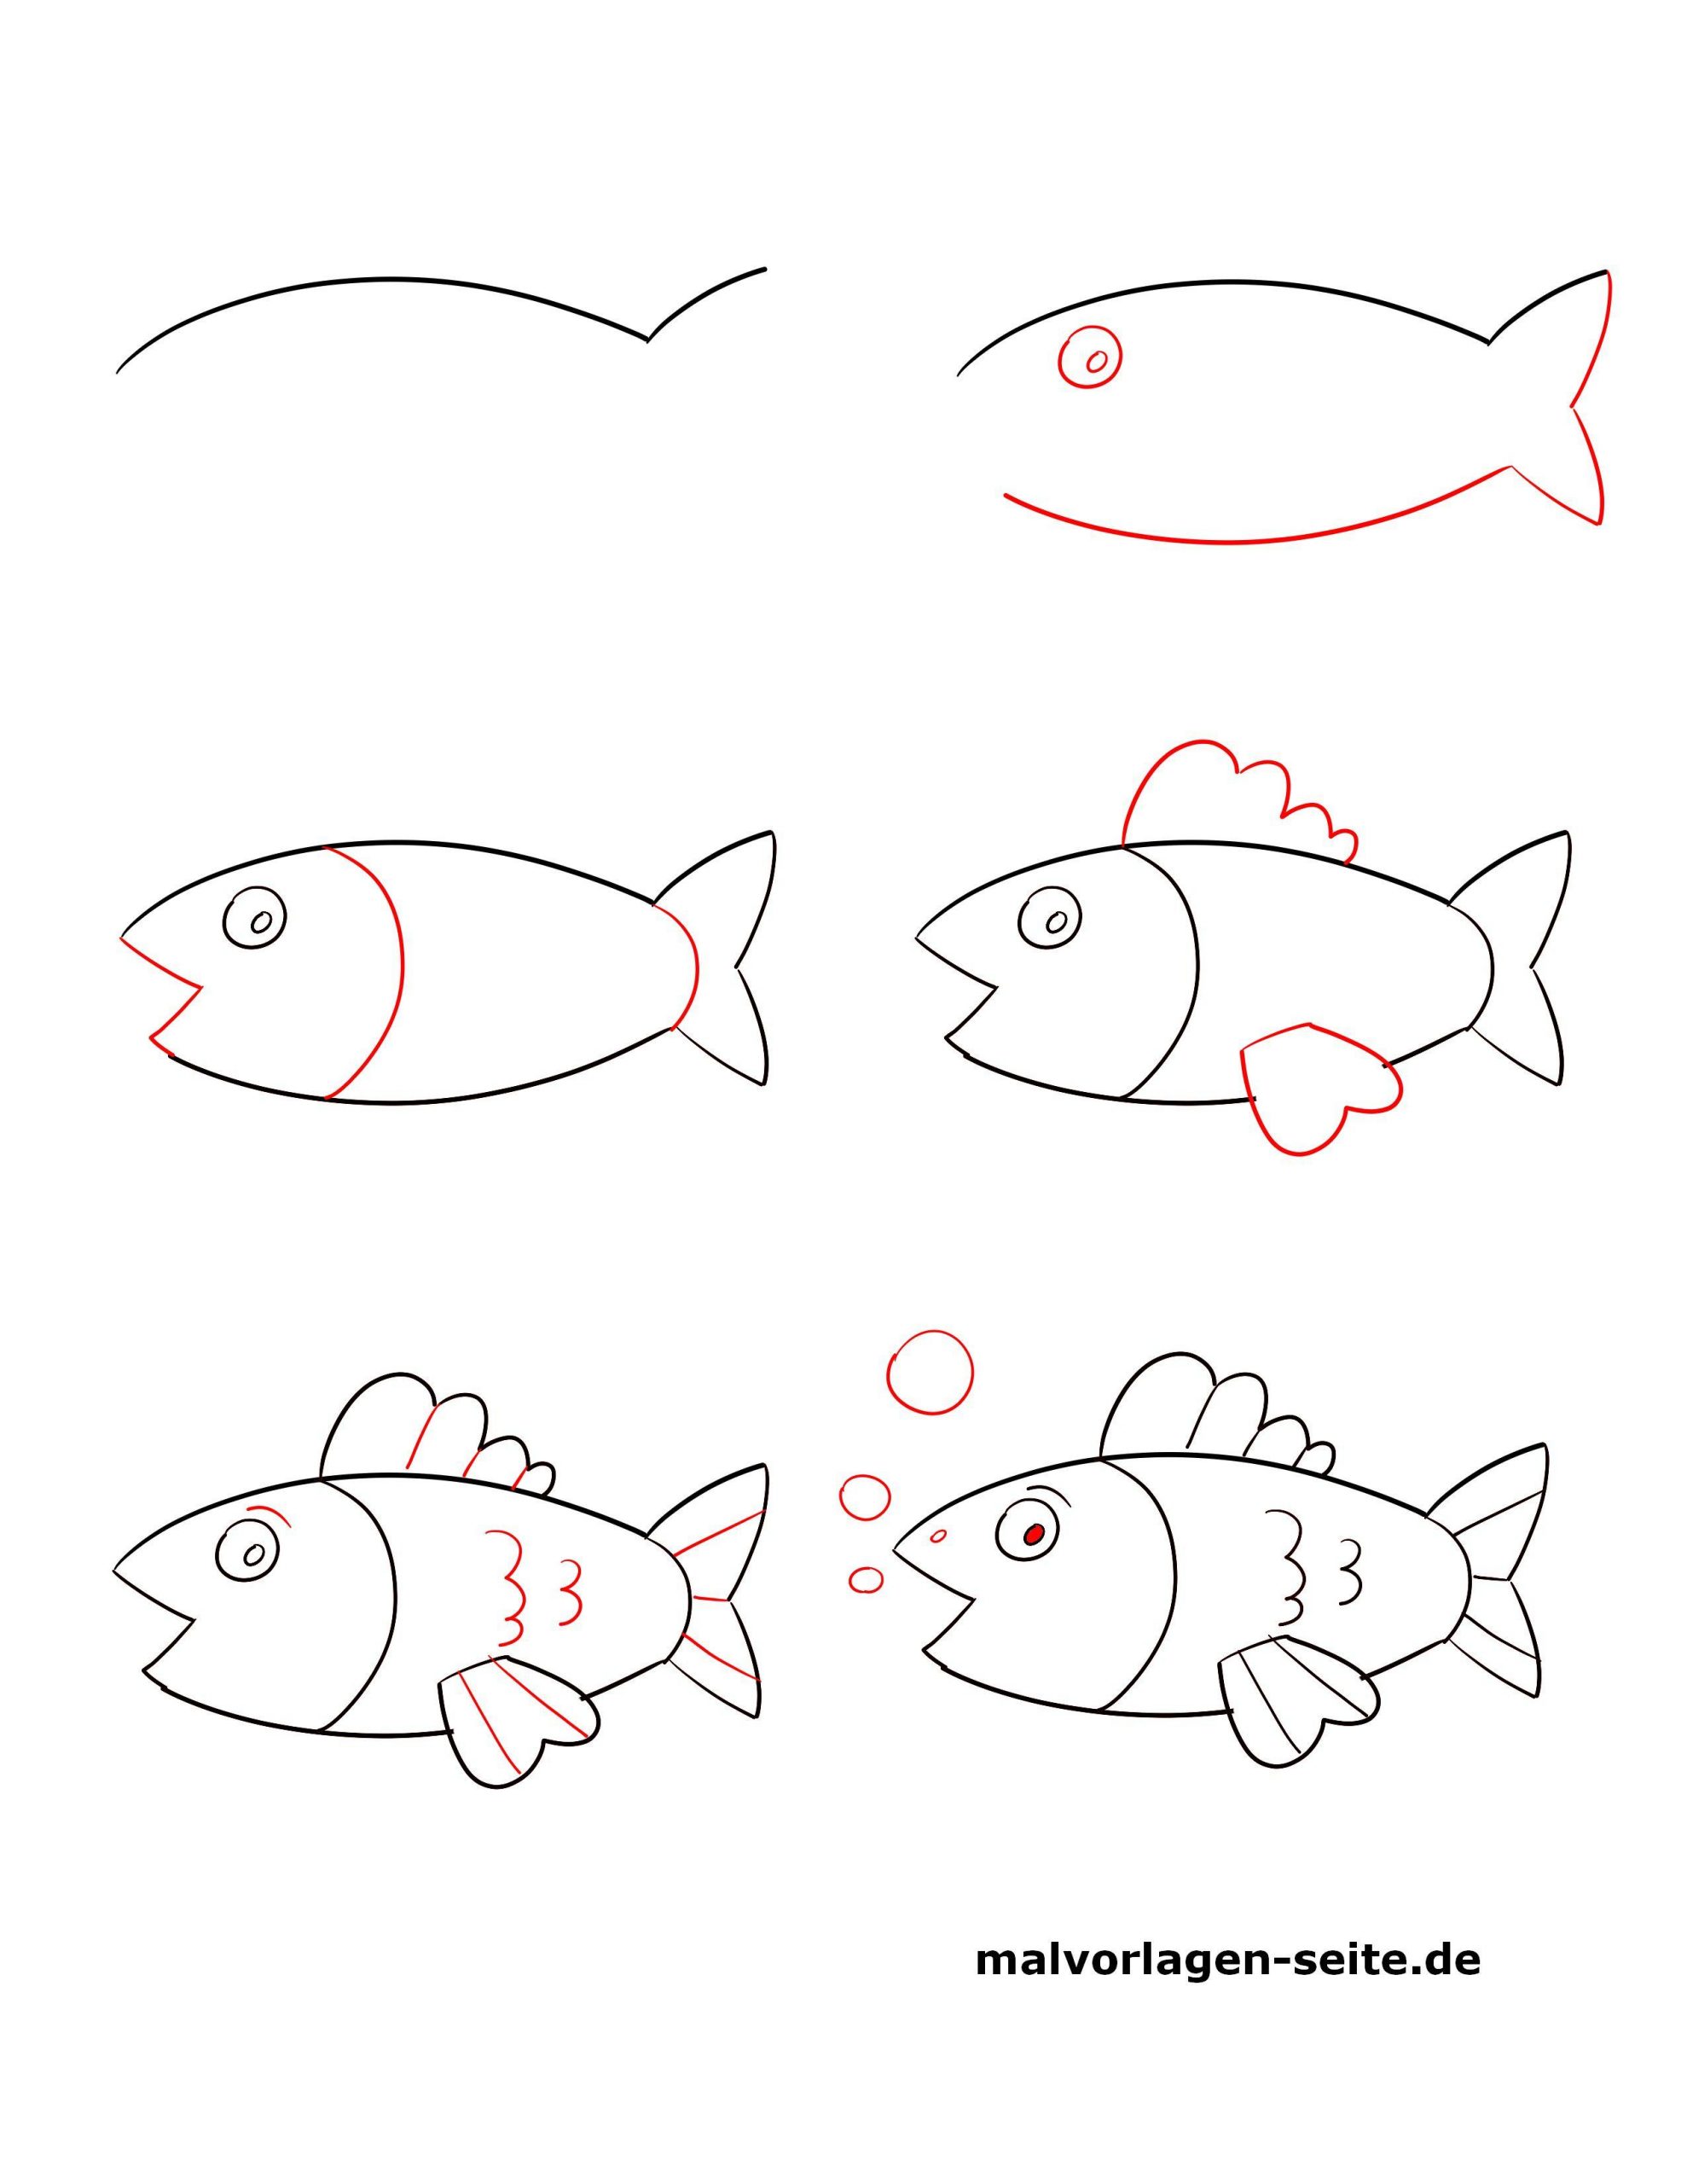 Нарисовать рыбку картинки. Рисование рыбки. Поэтапное рисование рыбы. Поэтапное рисование рыбы для детей. Рисование рыбки поэтапно для детей.